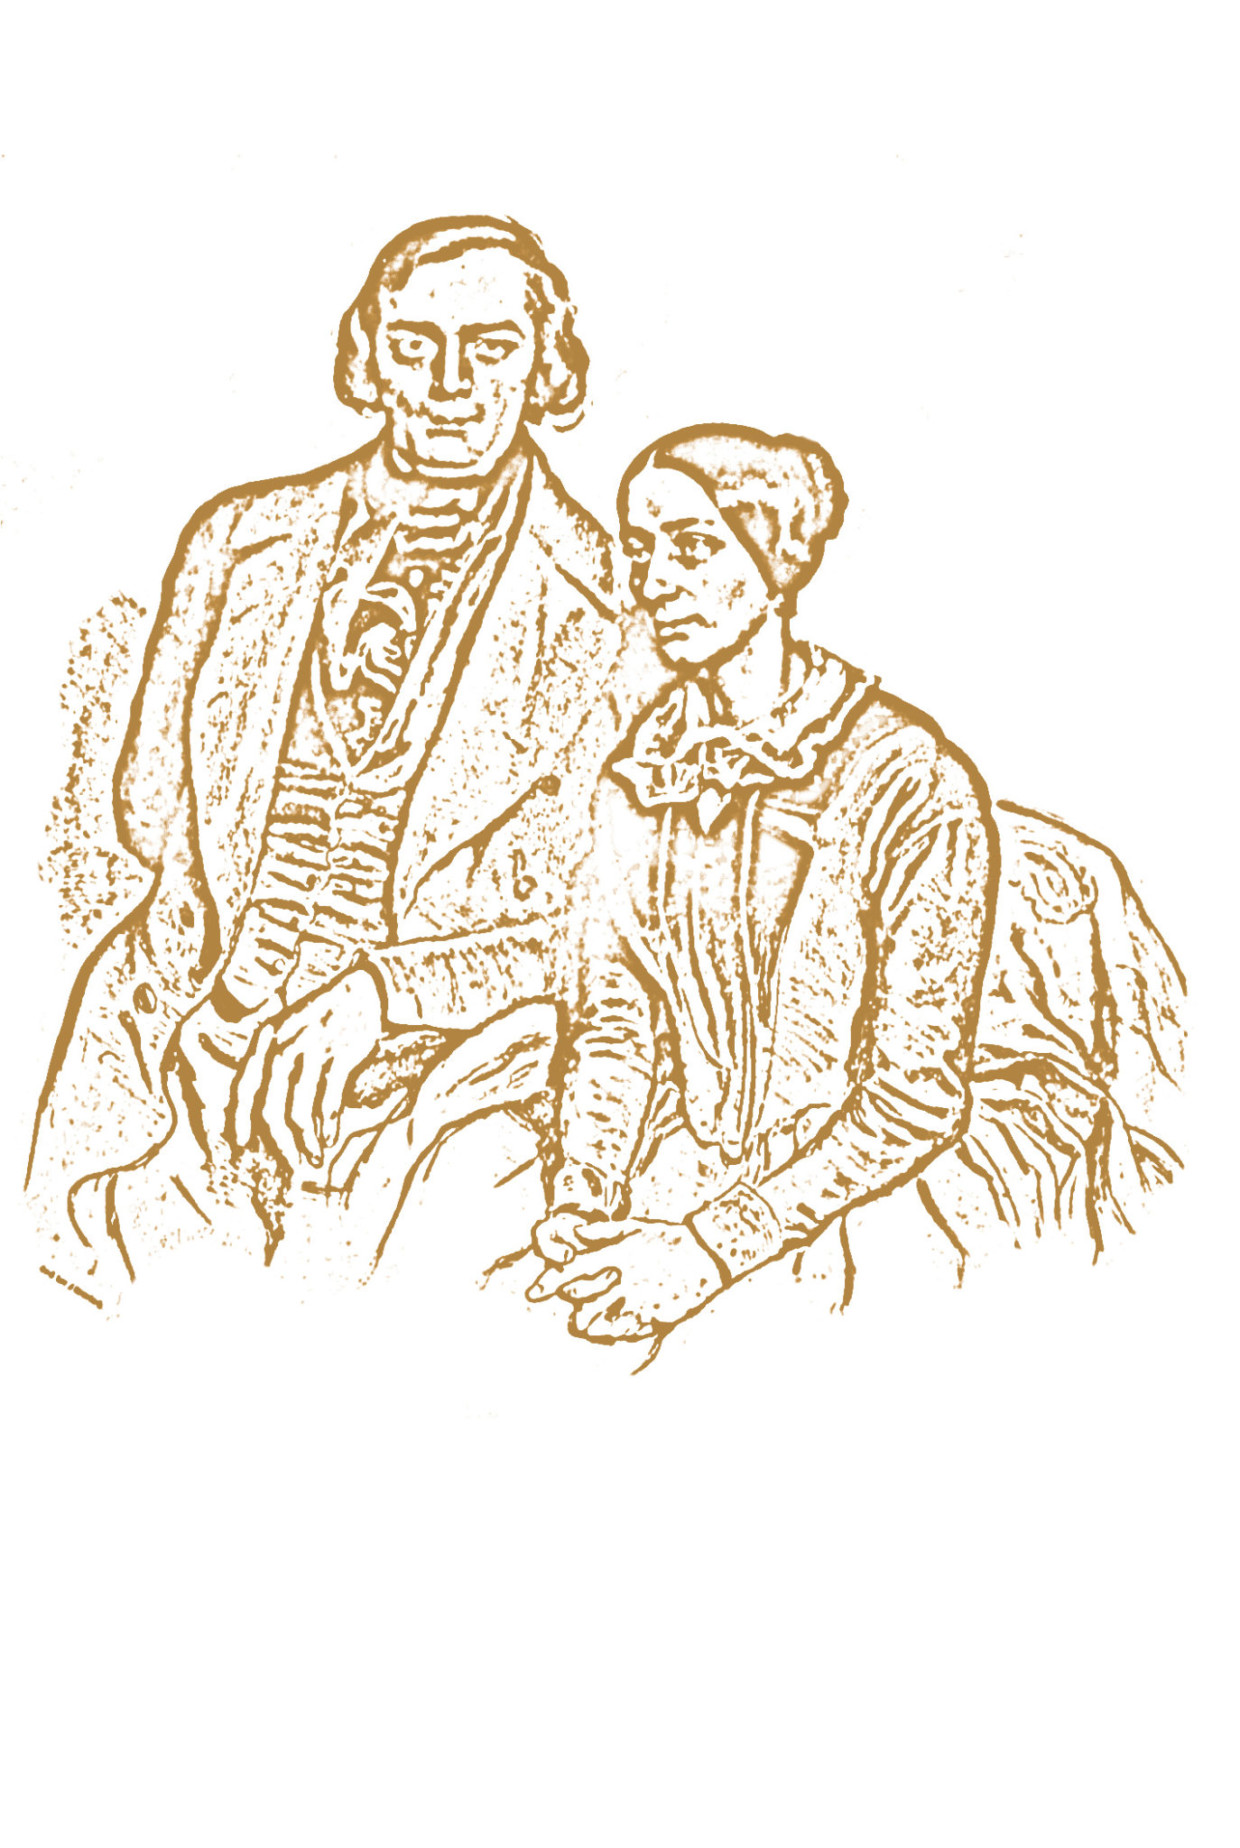 Robert und Clara Schumann